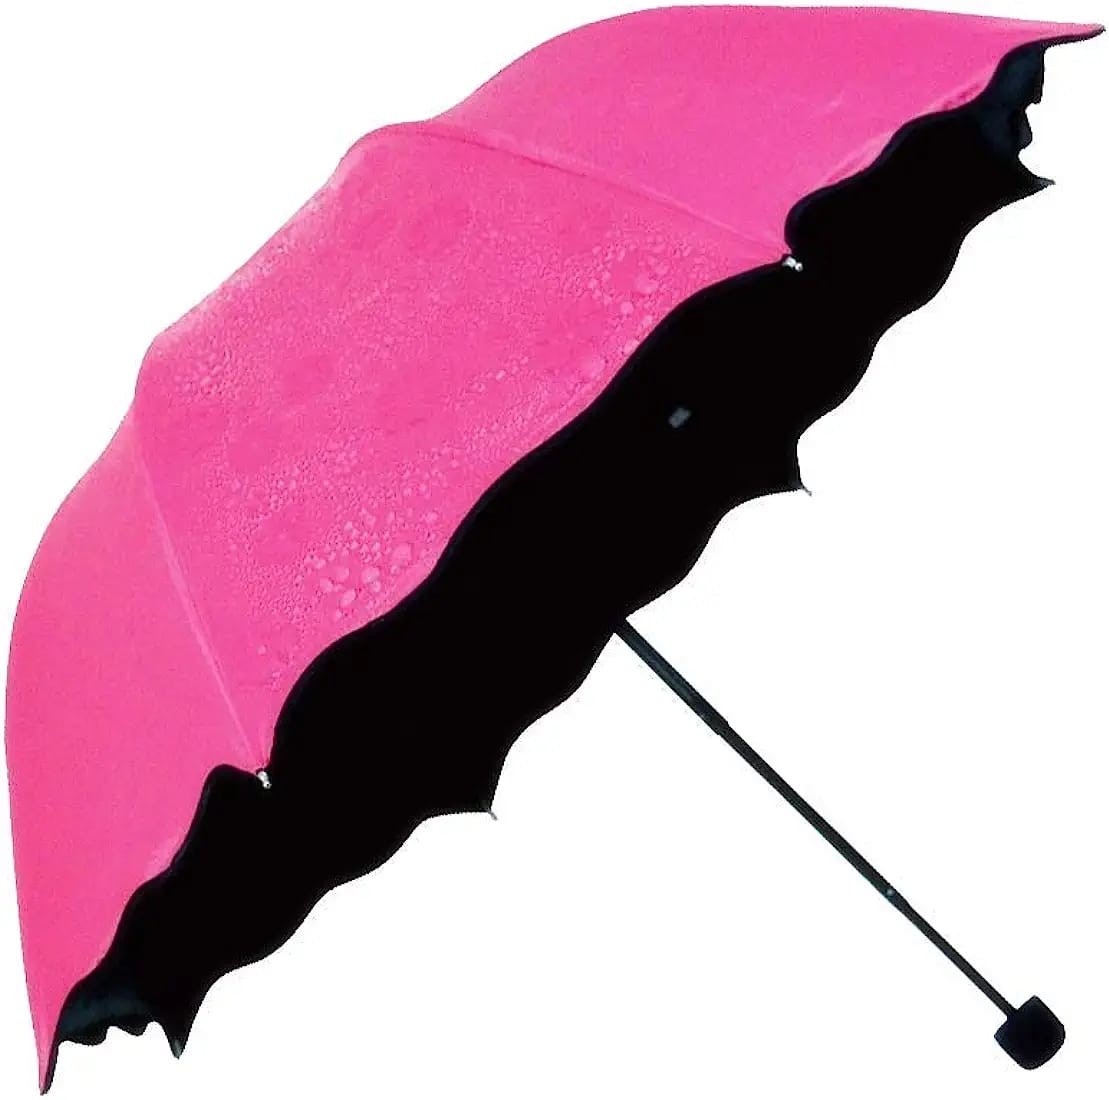 Magic Umbrella, Compact Umbrella, Women Umbrella, A Creative Magical Umbrella of Blooming Flowers Design (Pack of 1)